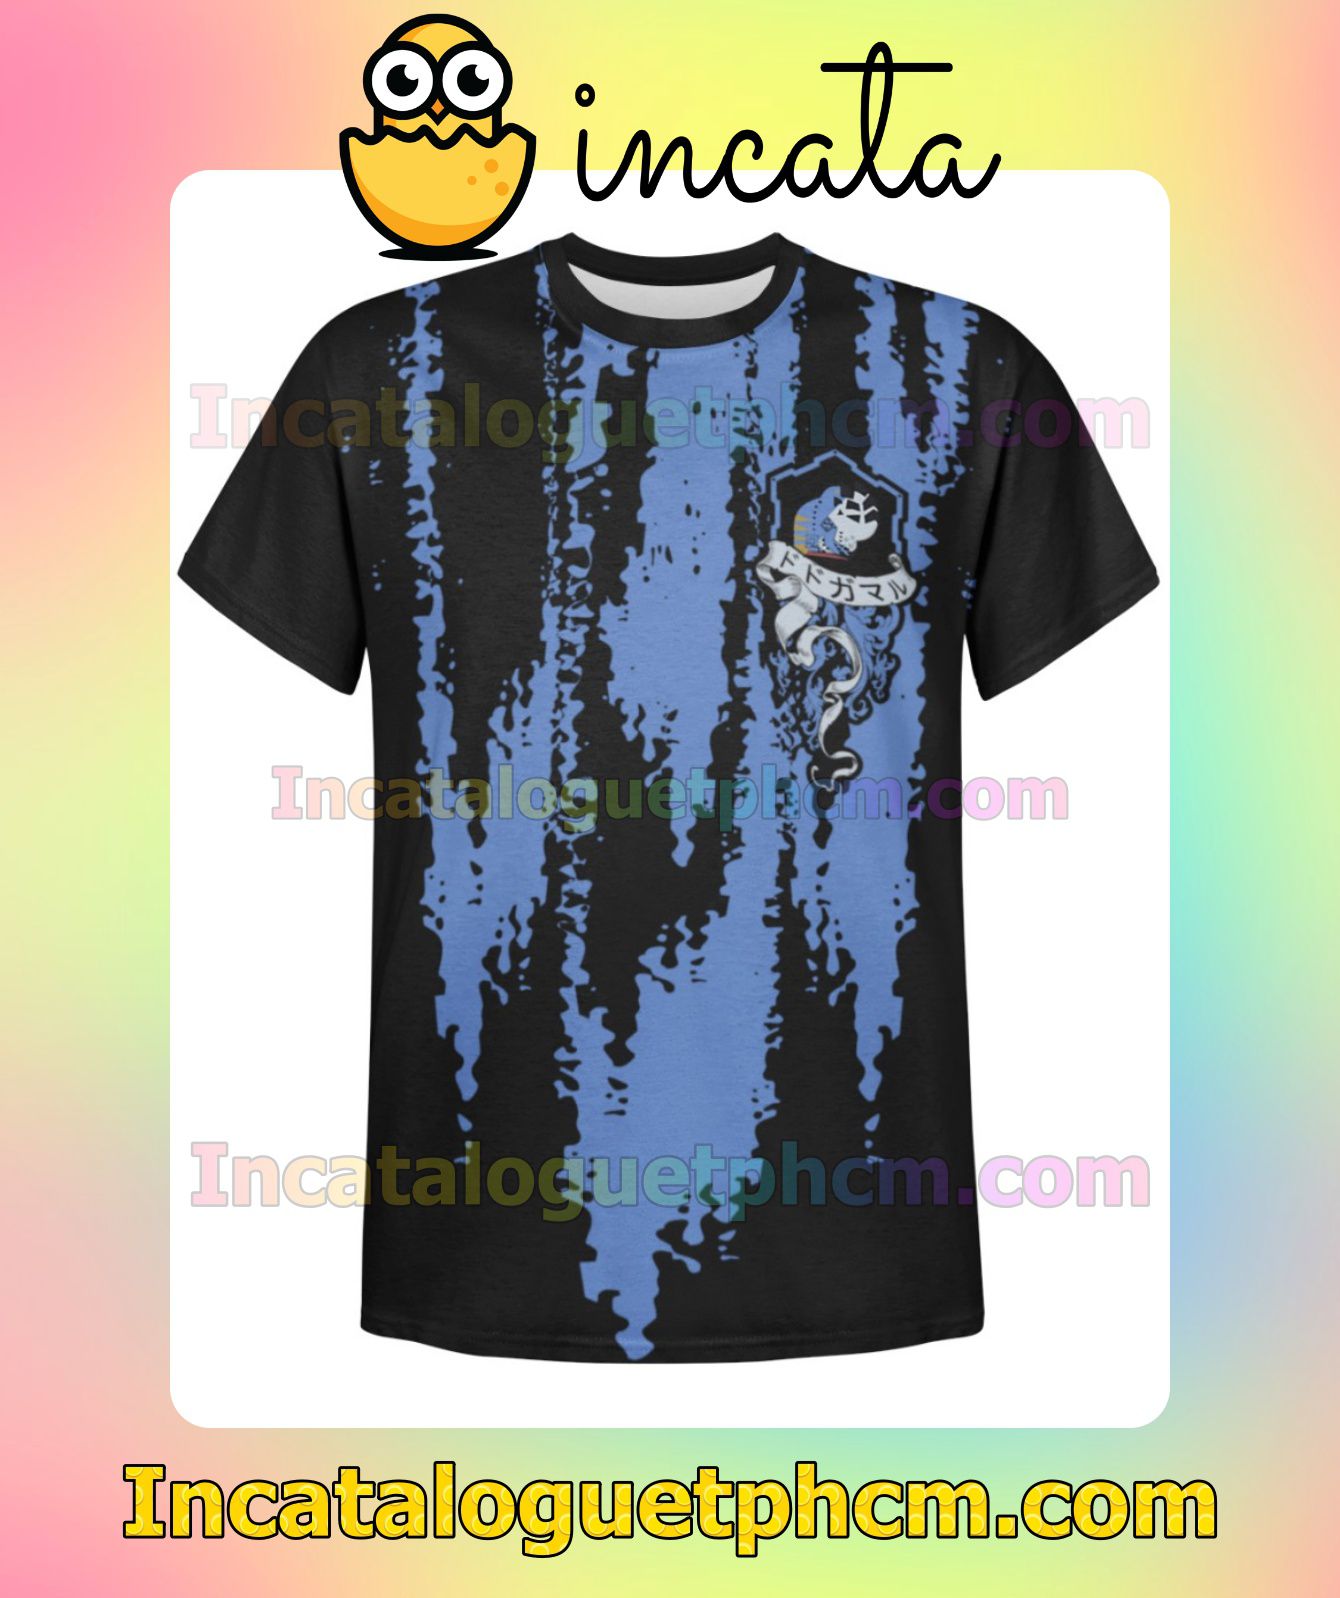 Dodogama Monster Hunter World Fan Gift Shirt